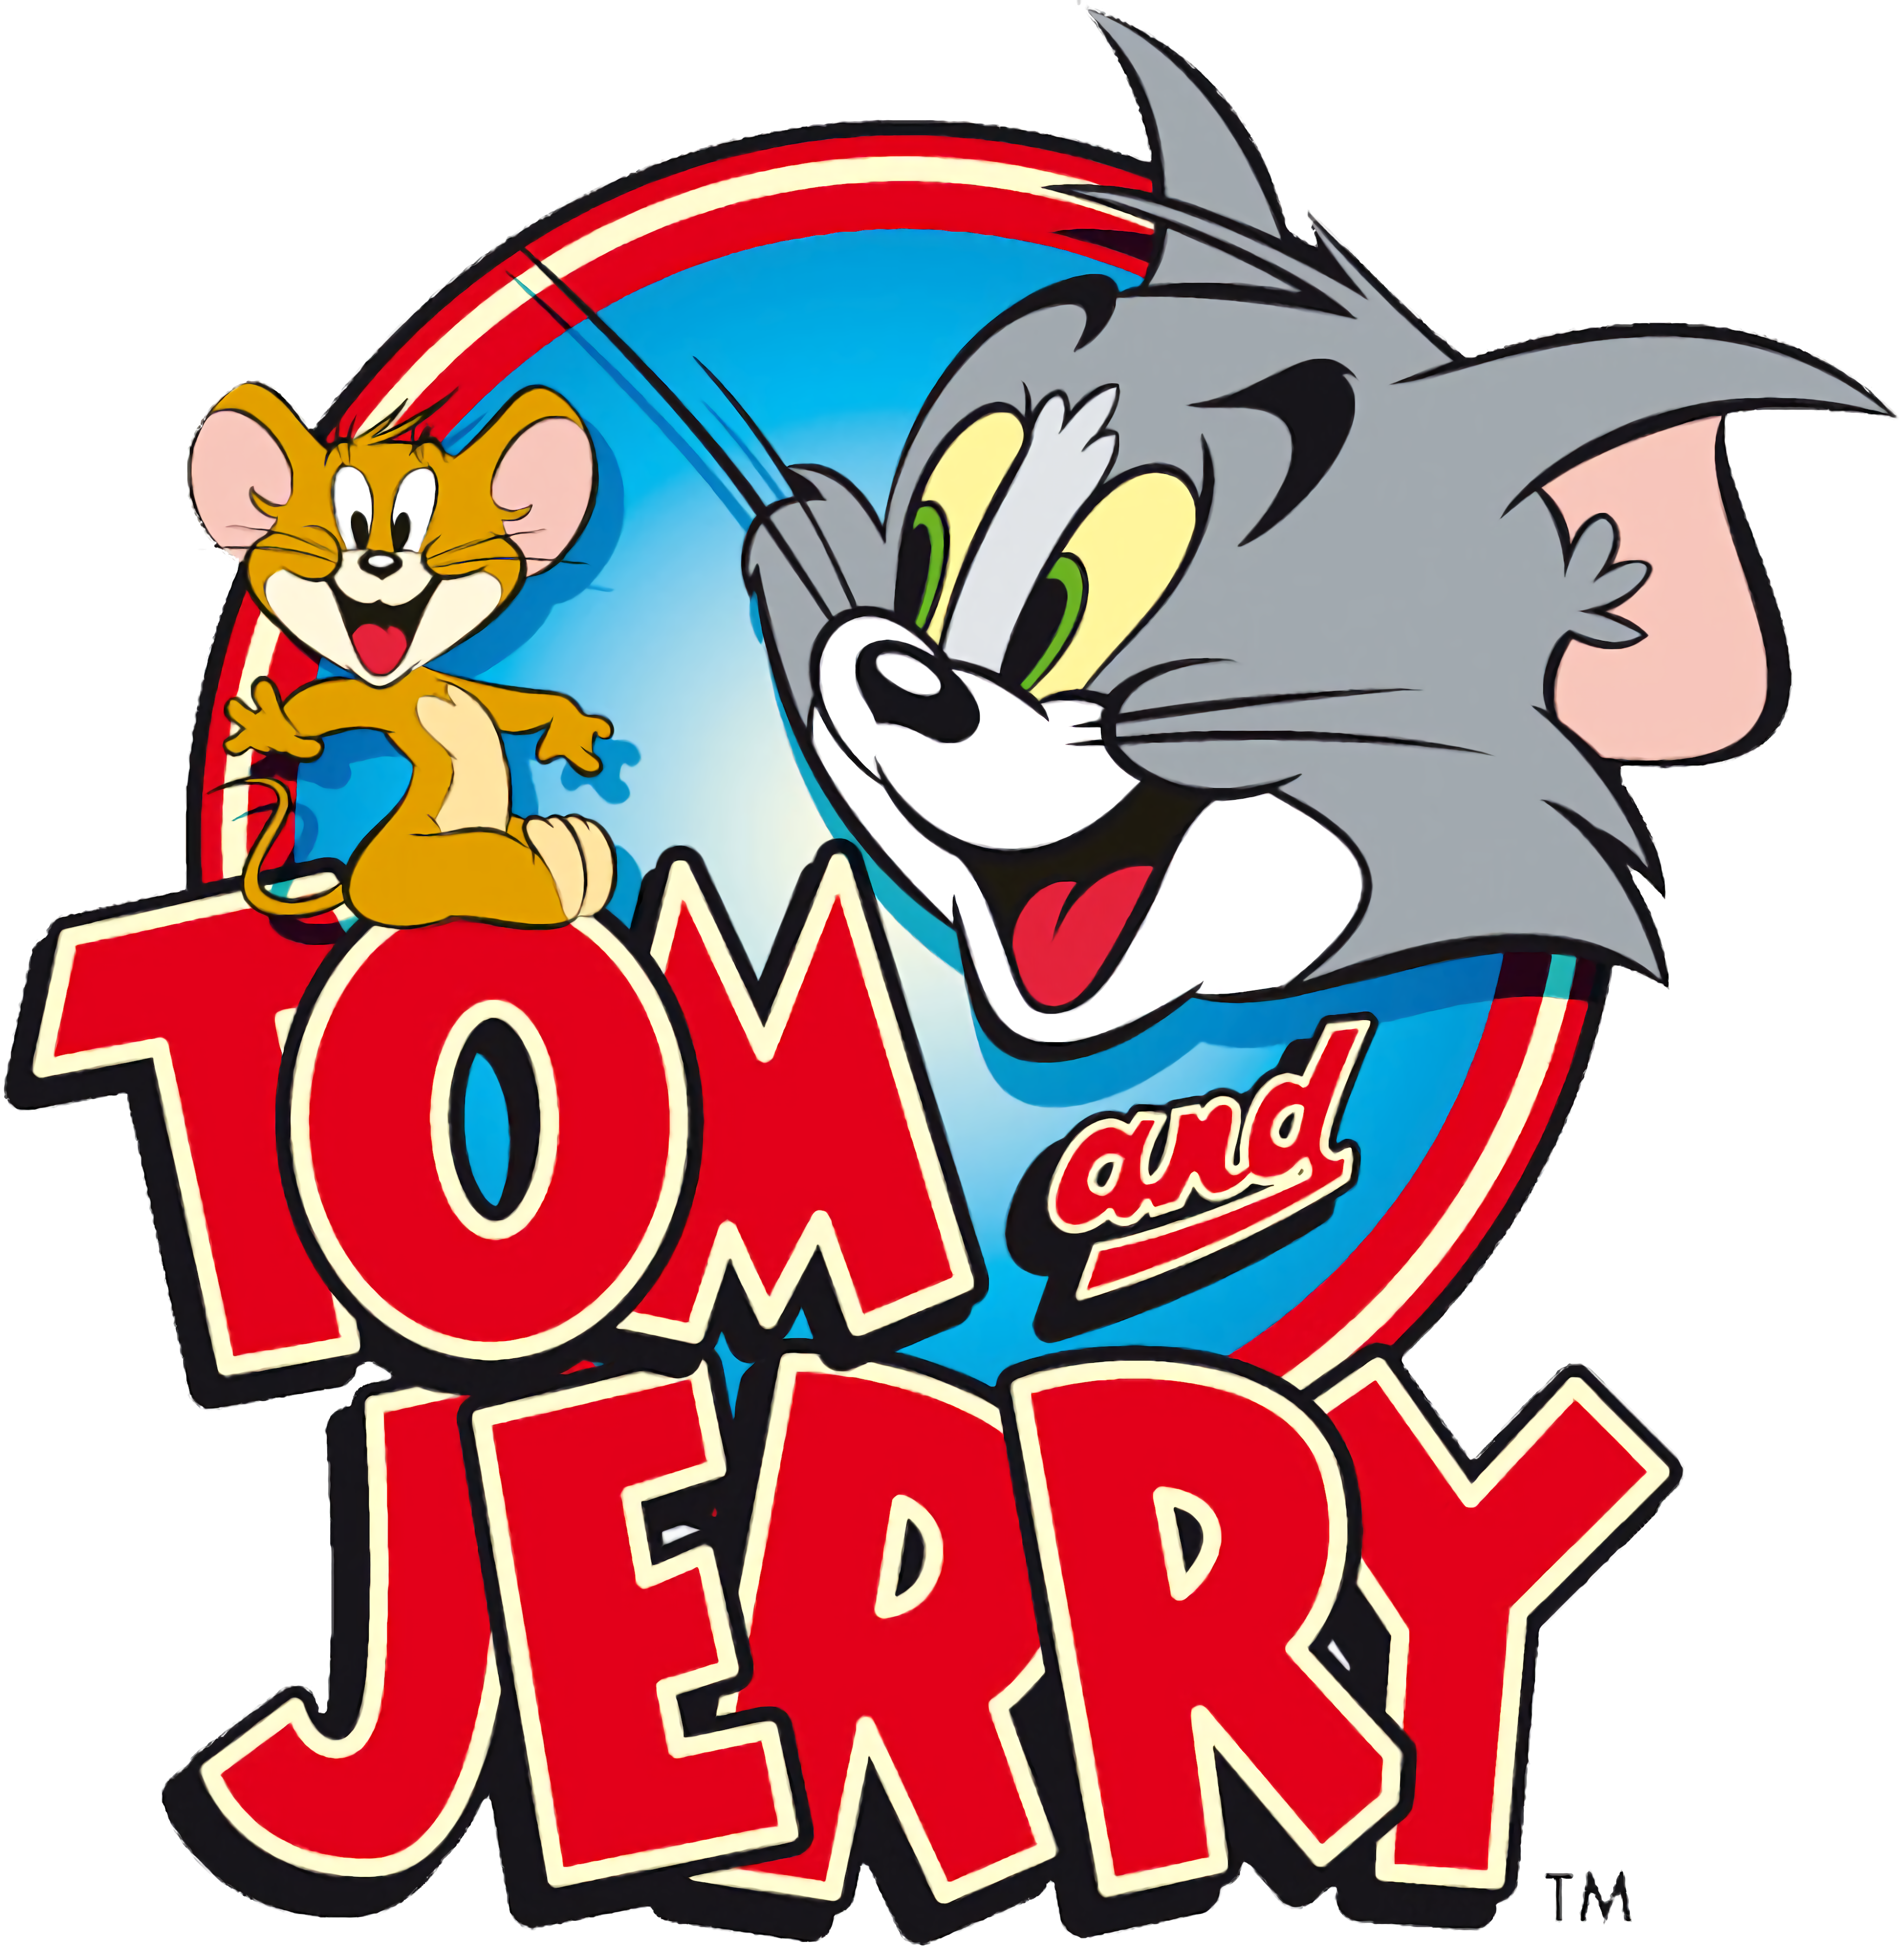 Tom och Jerry-spel